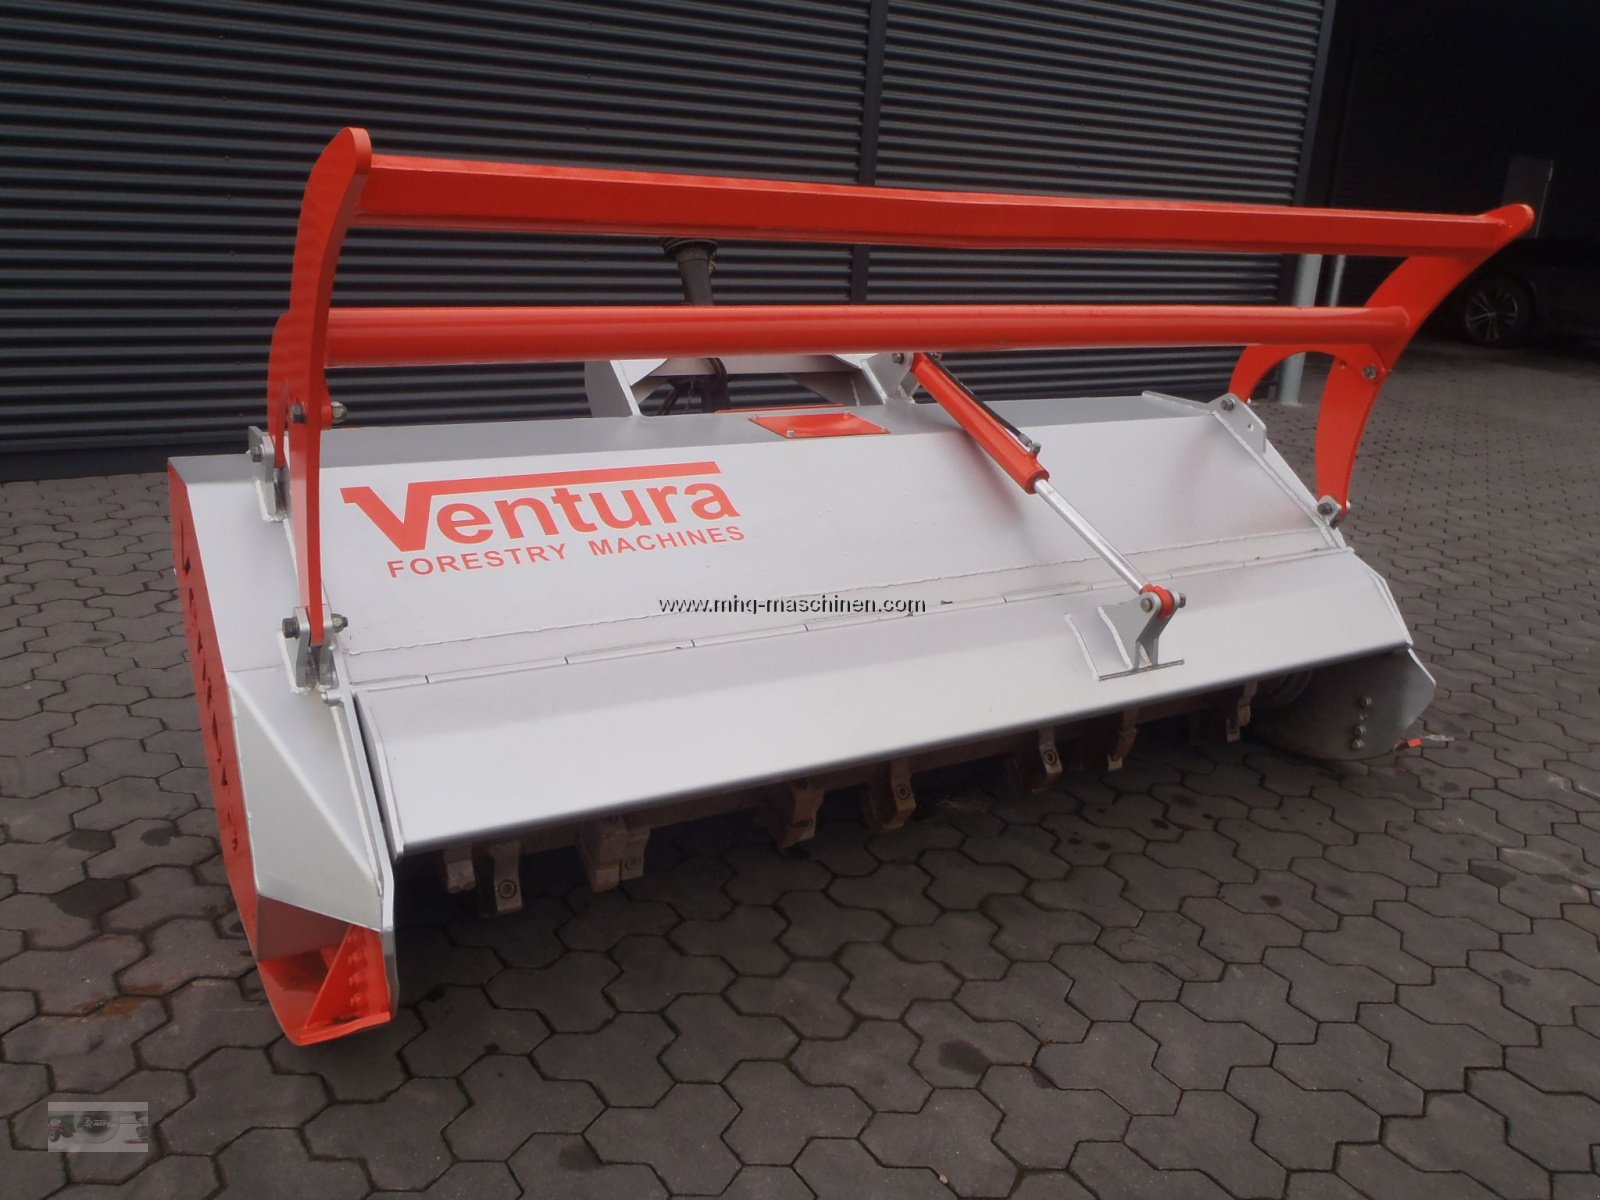 Forstfräse & Forstmulcher des Typs Ventura 250, Gebrauchtmaschine in Gescher (Bild 2)